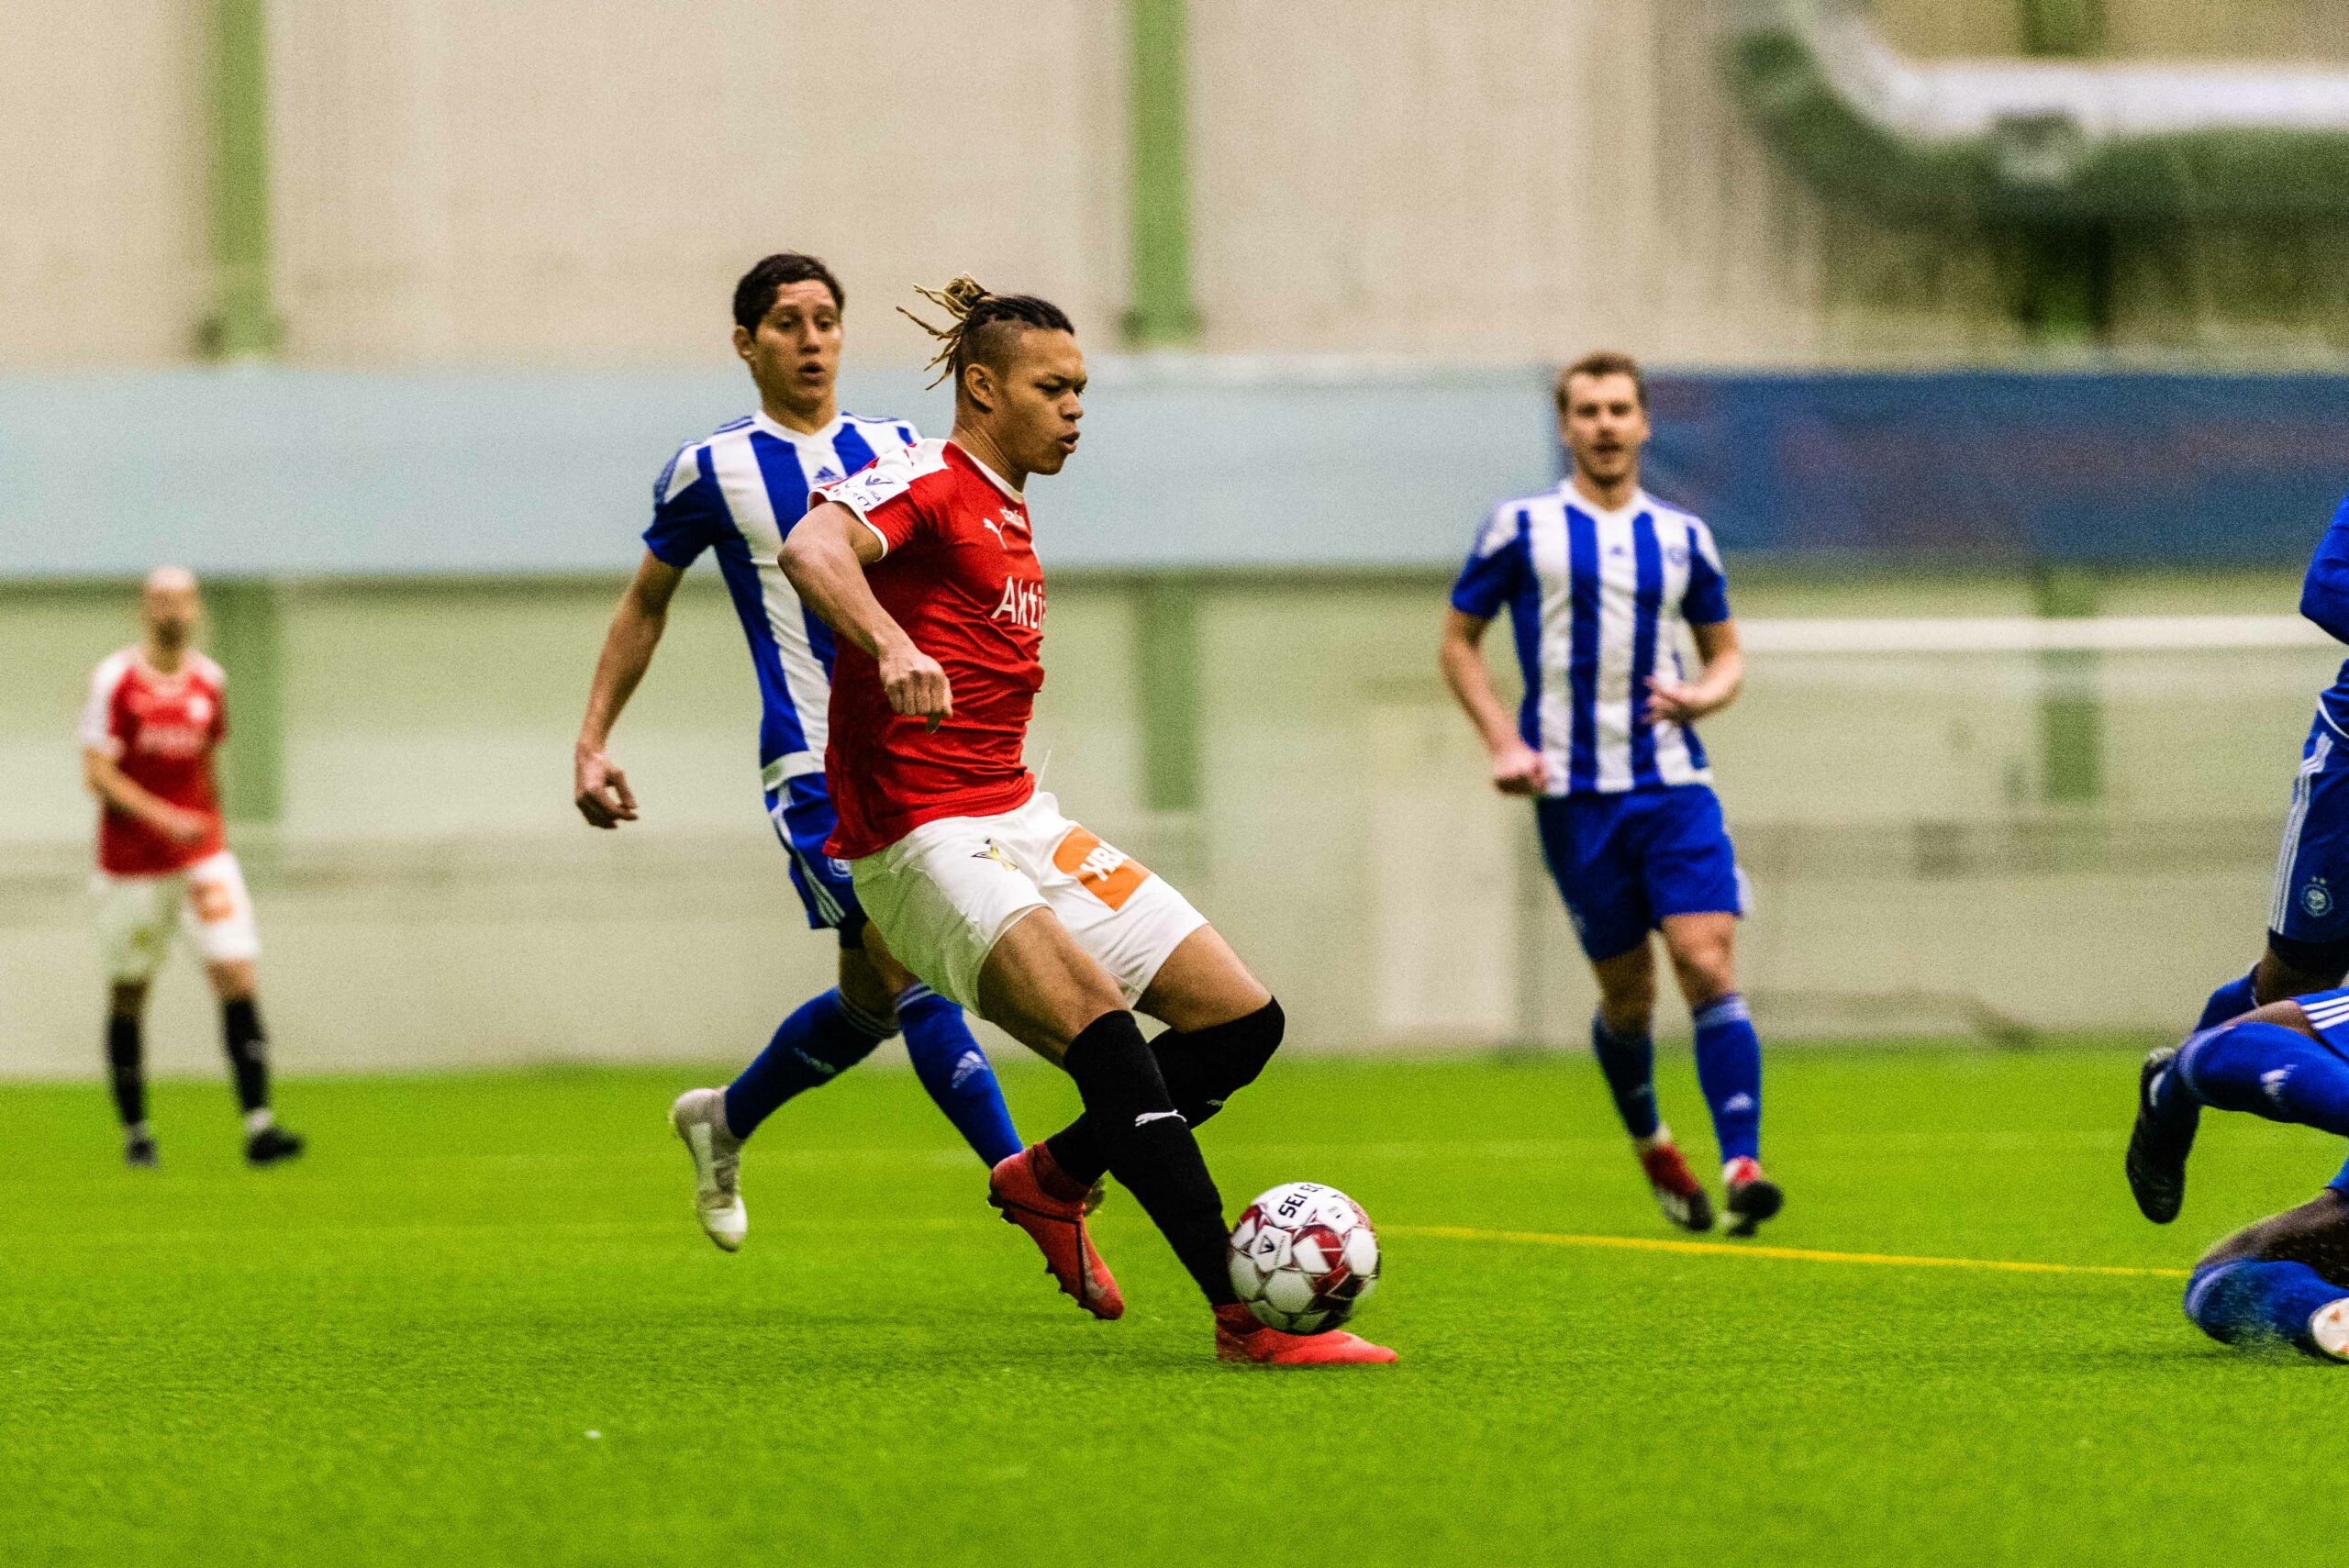 HJK:s mål i slutminuterna avgjorde säsongens första derby